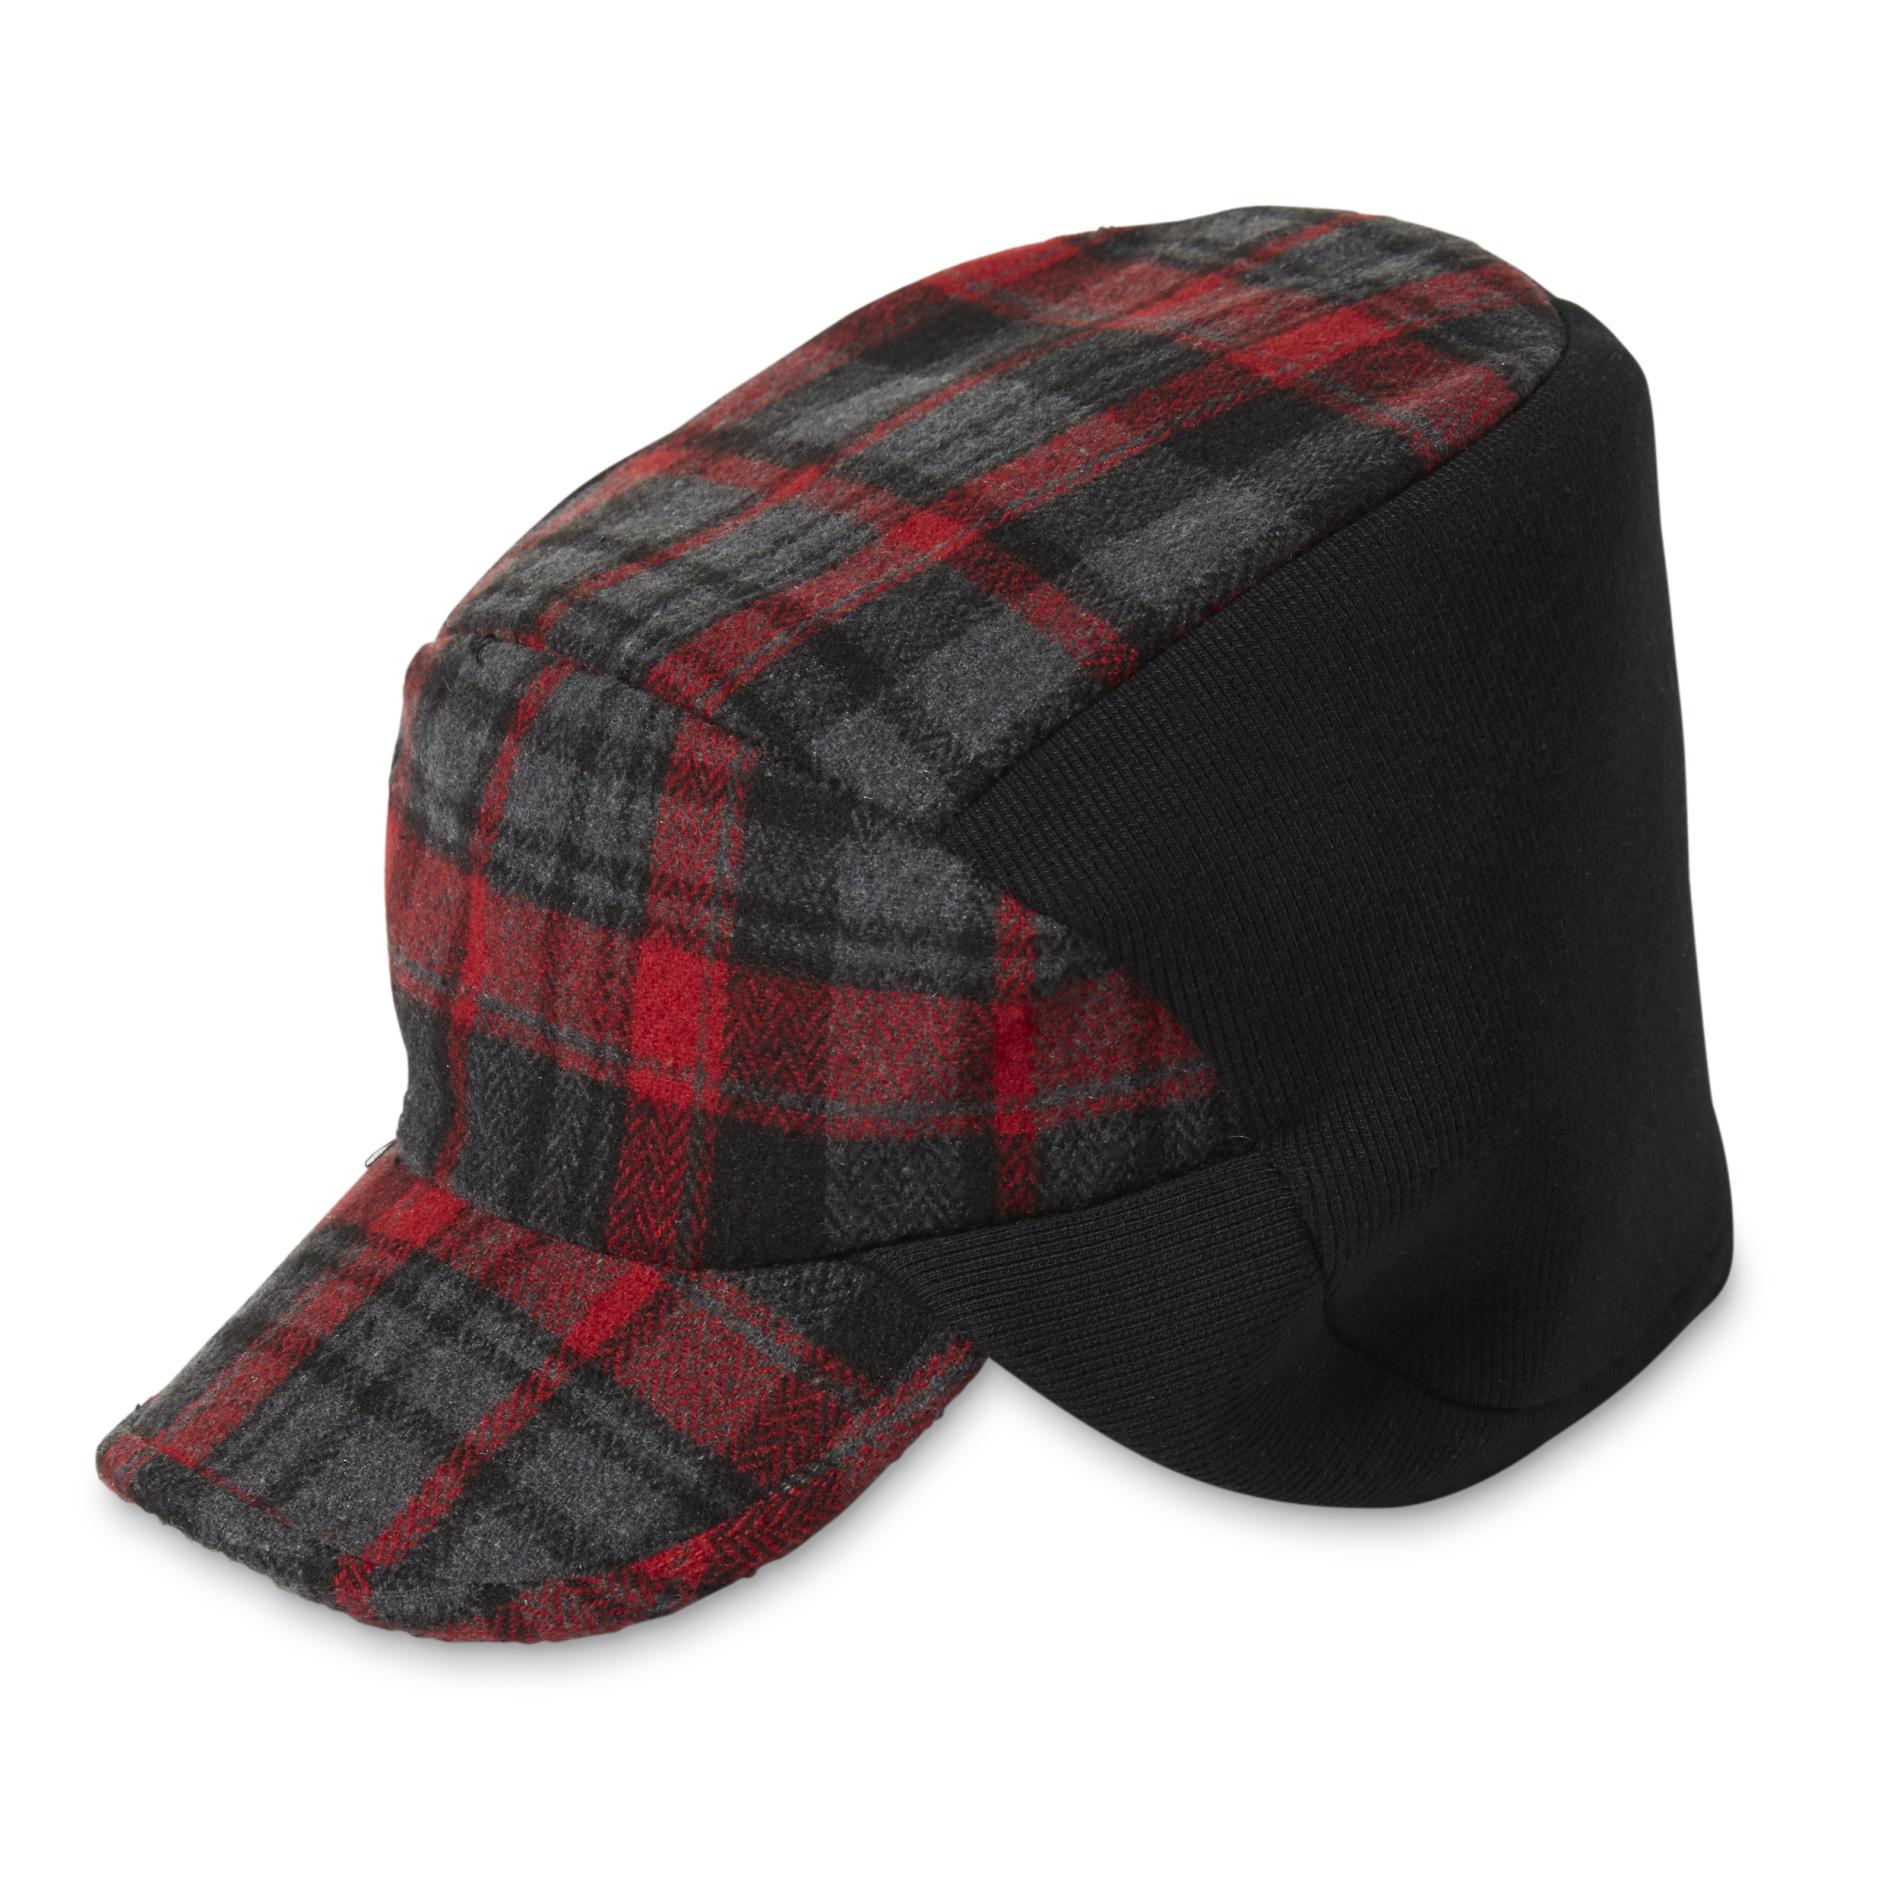 Dockers Men's Wool-Blend Ear Warmer Hat - Plaid